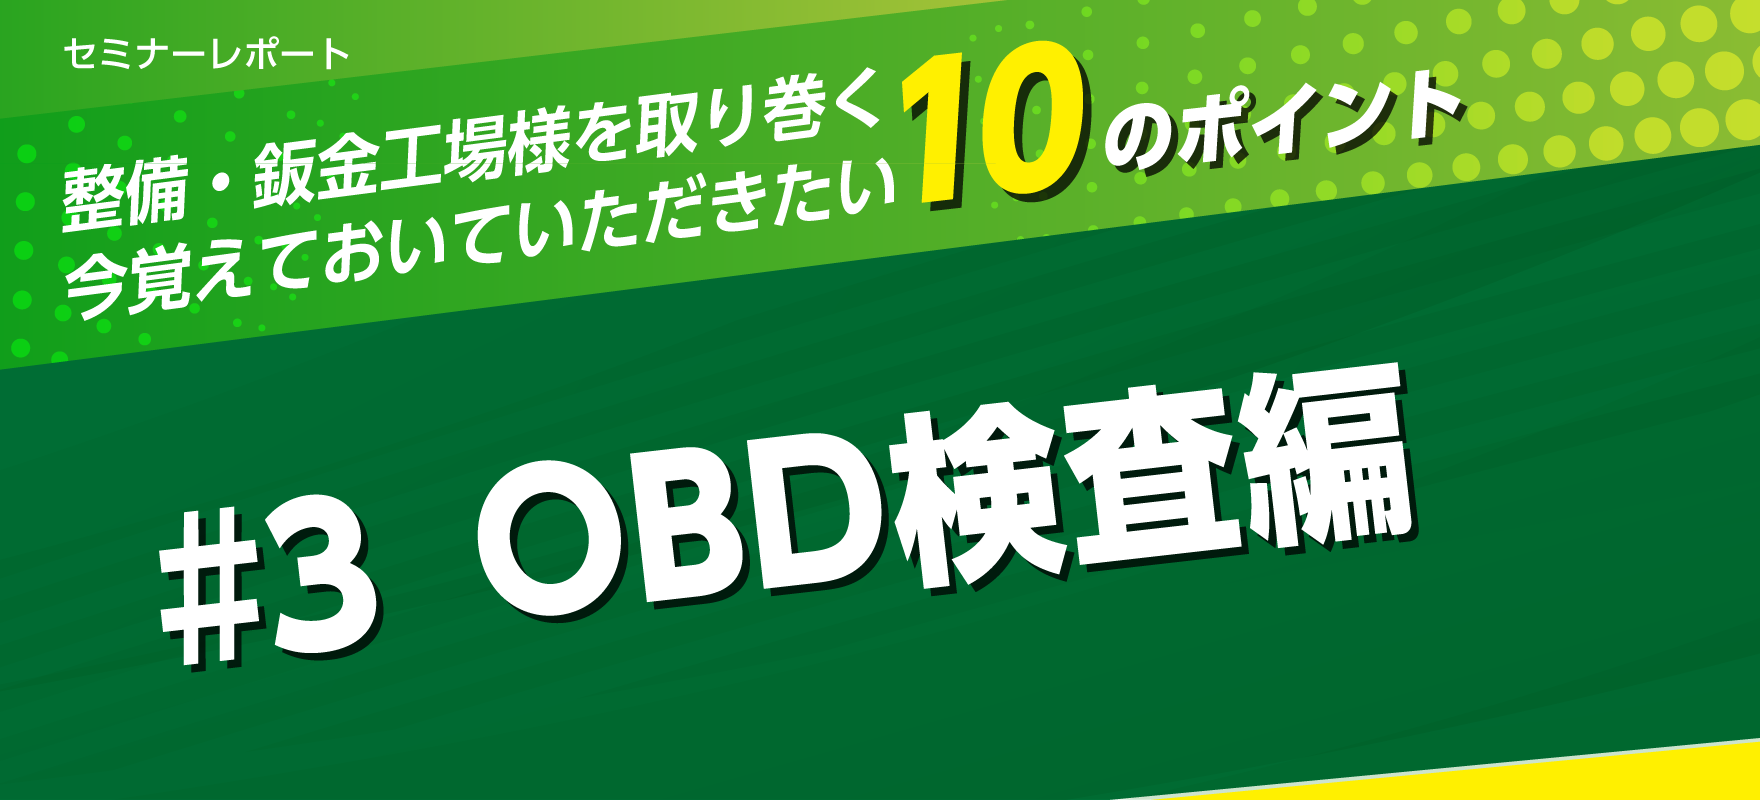 OBD検査編